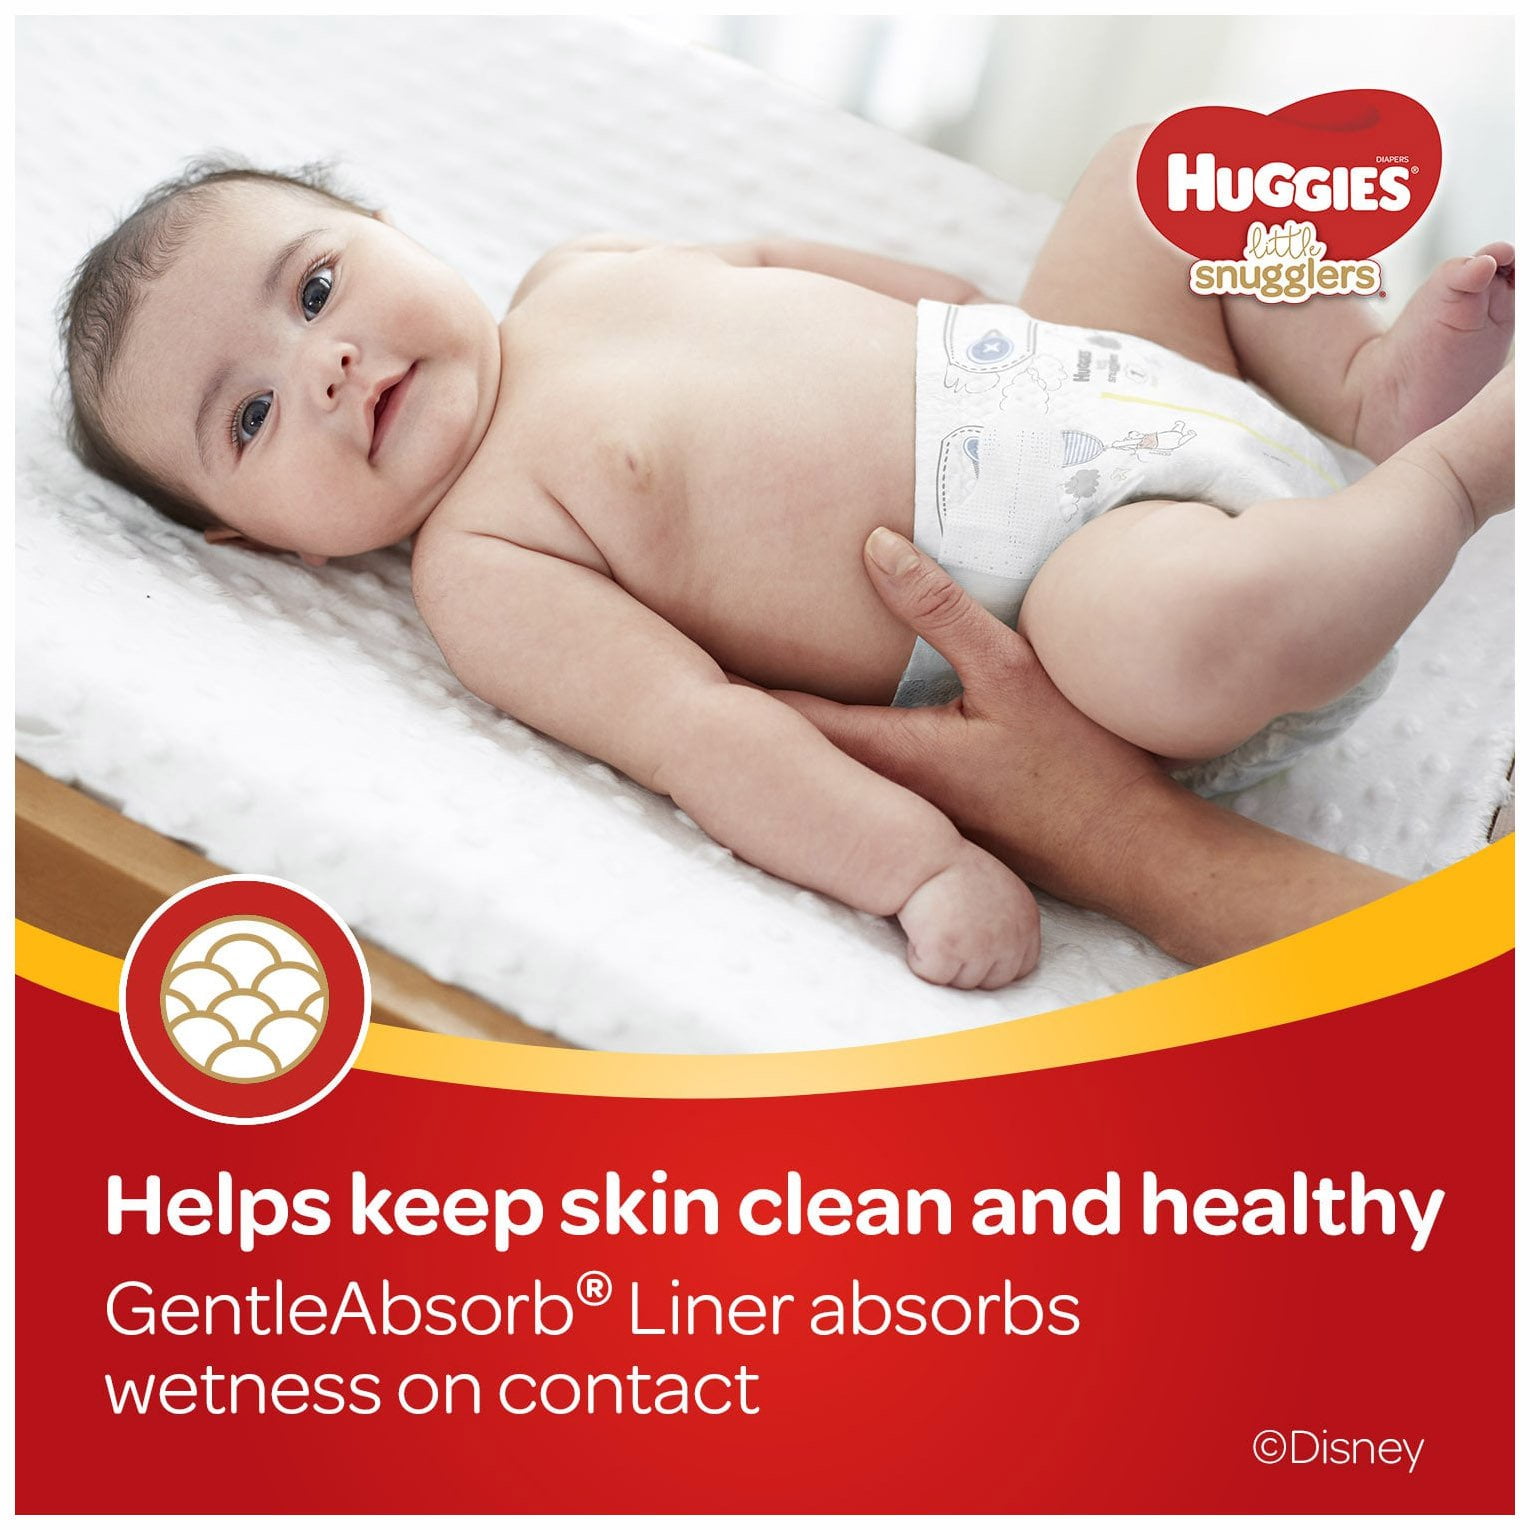 huggies diapers for newborn